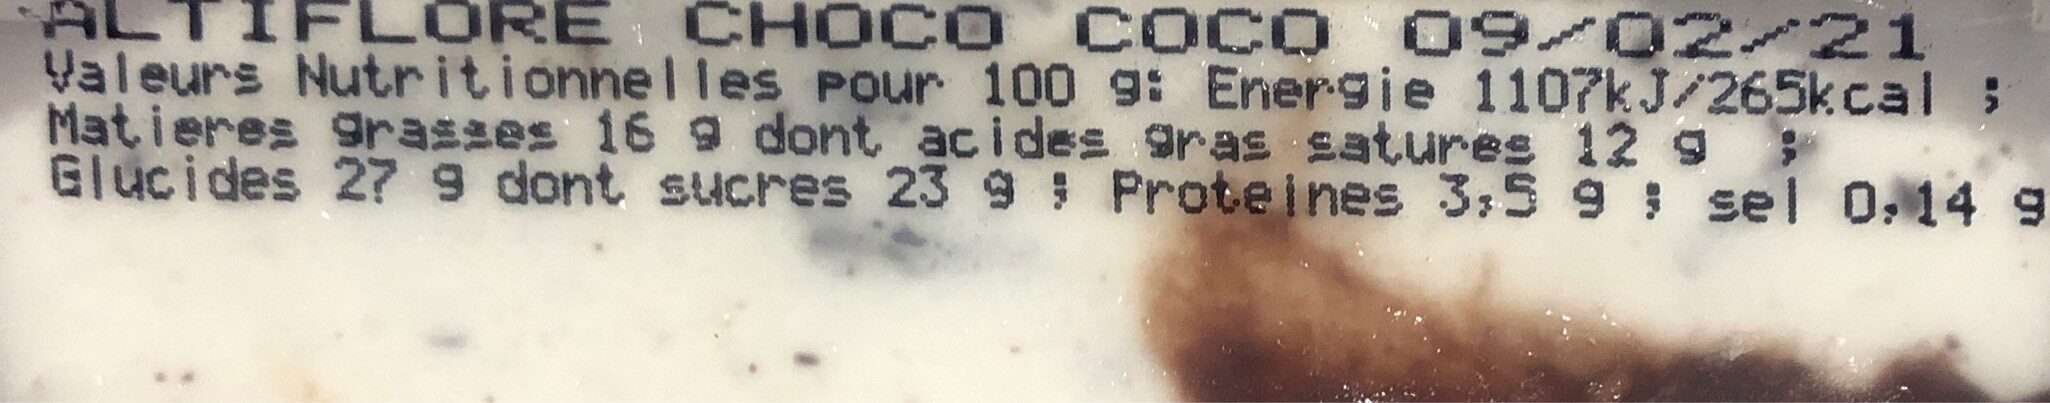 Glace Choco coco - Tableau nutritionnel - fr